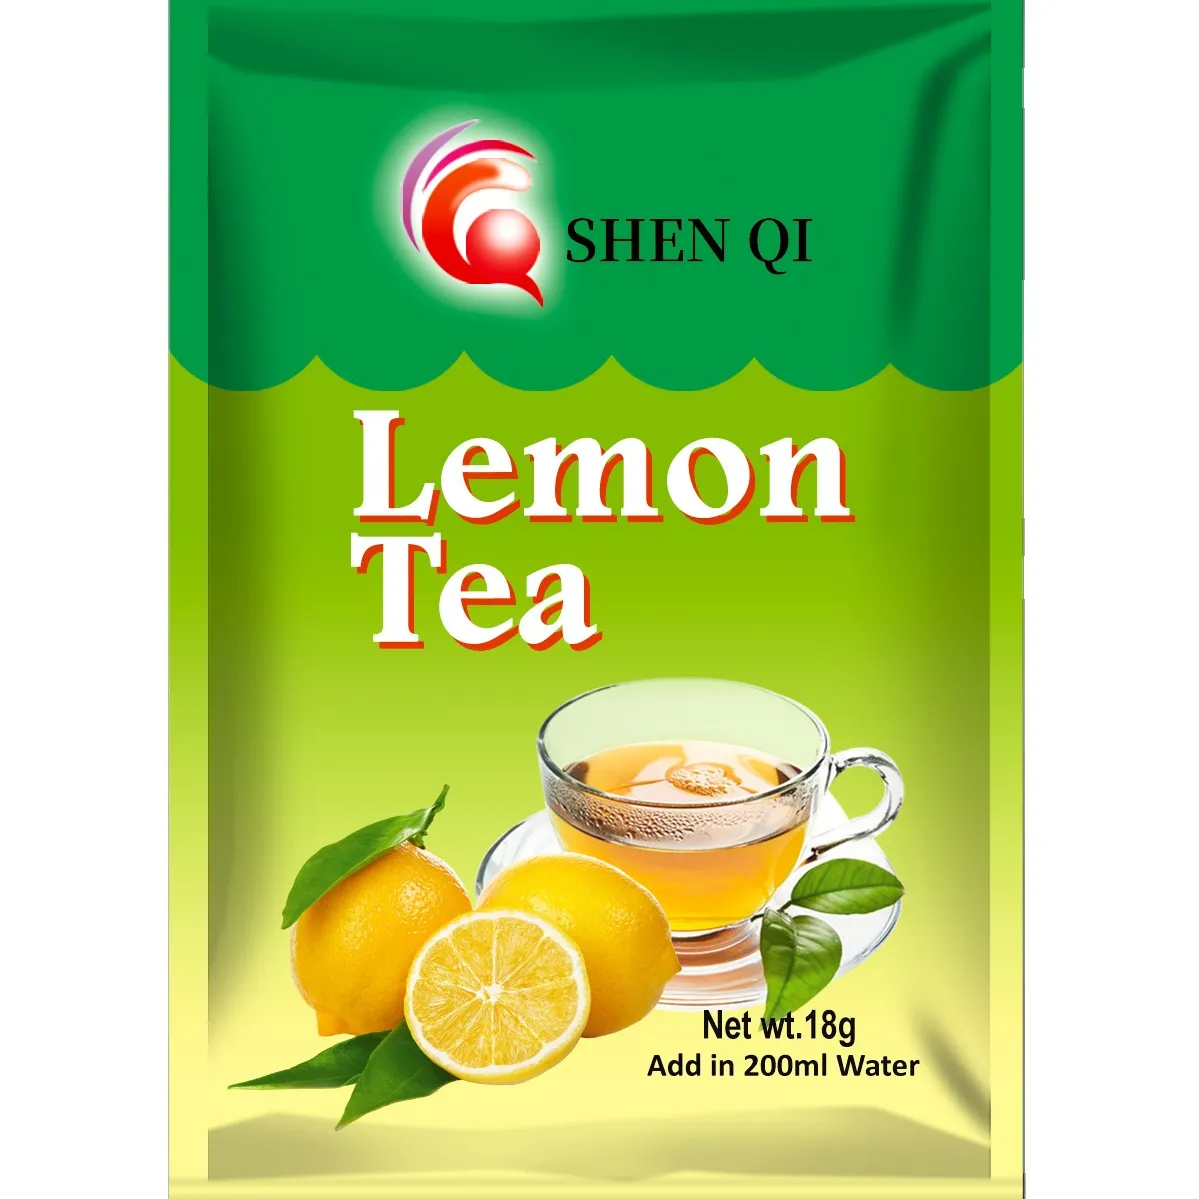 Instant lemon tea